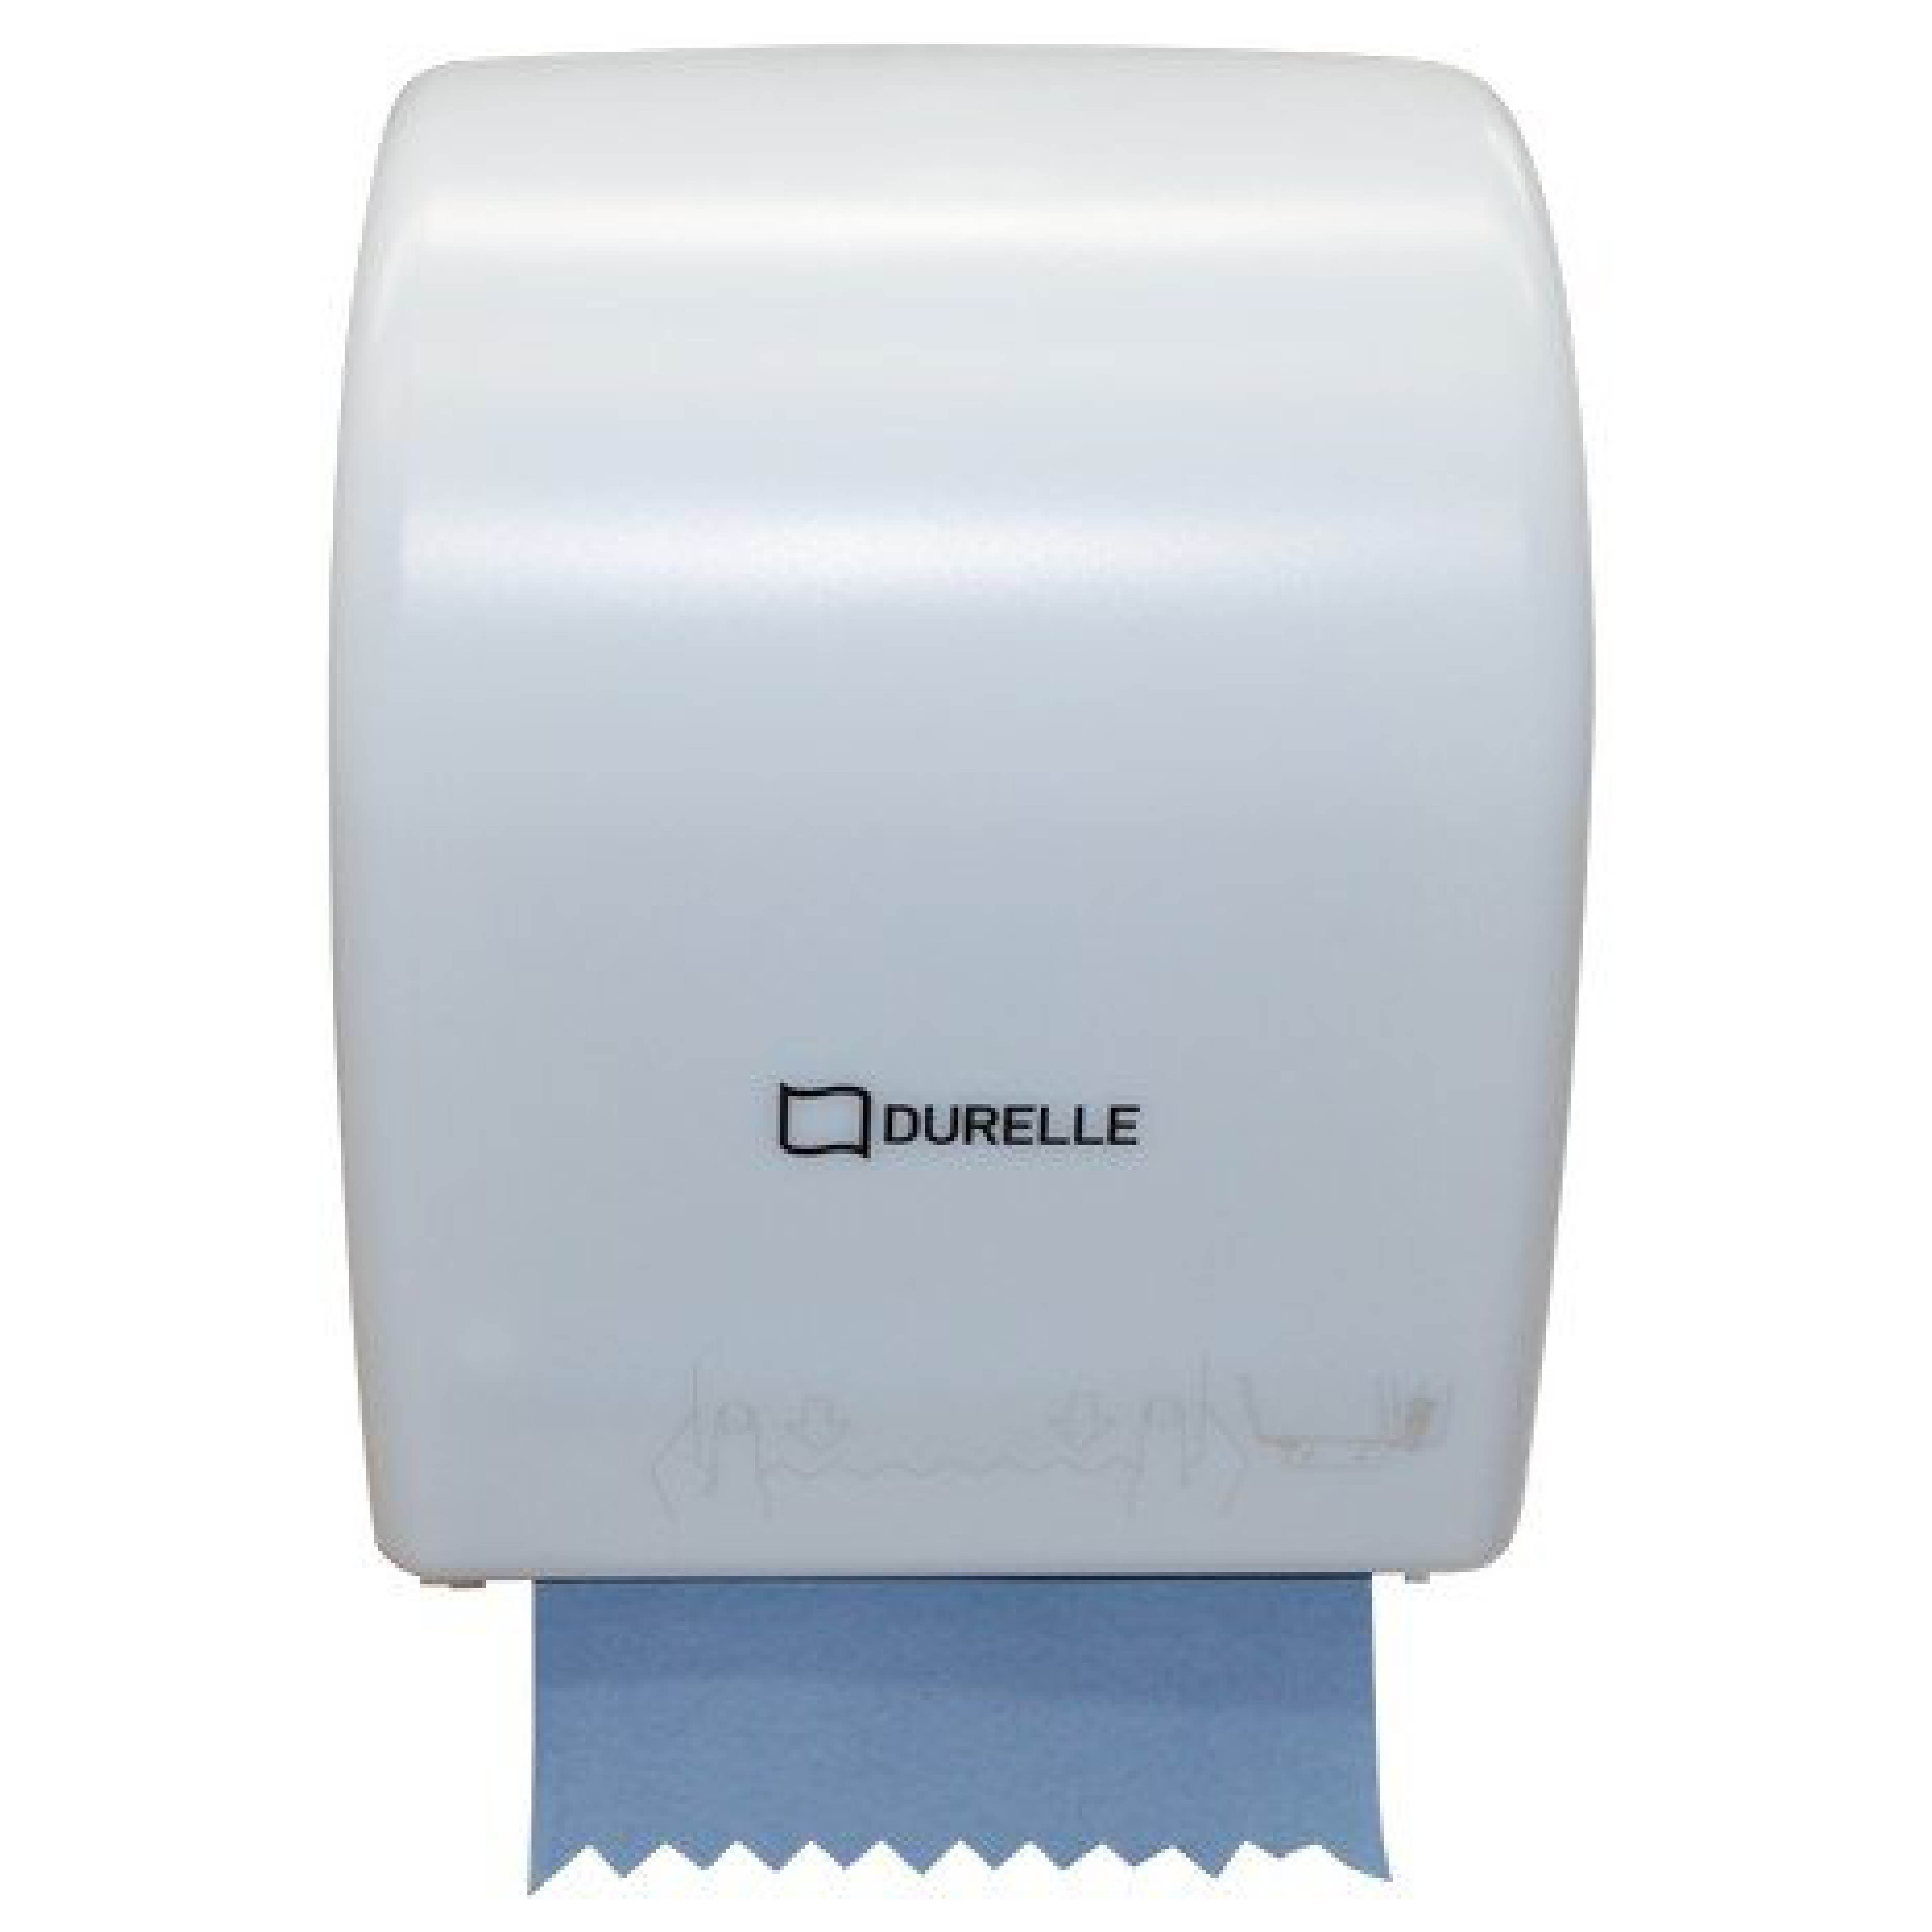 Durelle Manual Auto Cut White Dispenser (each)